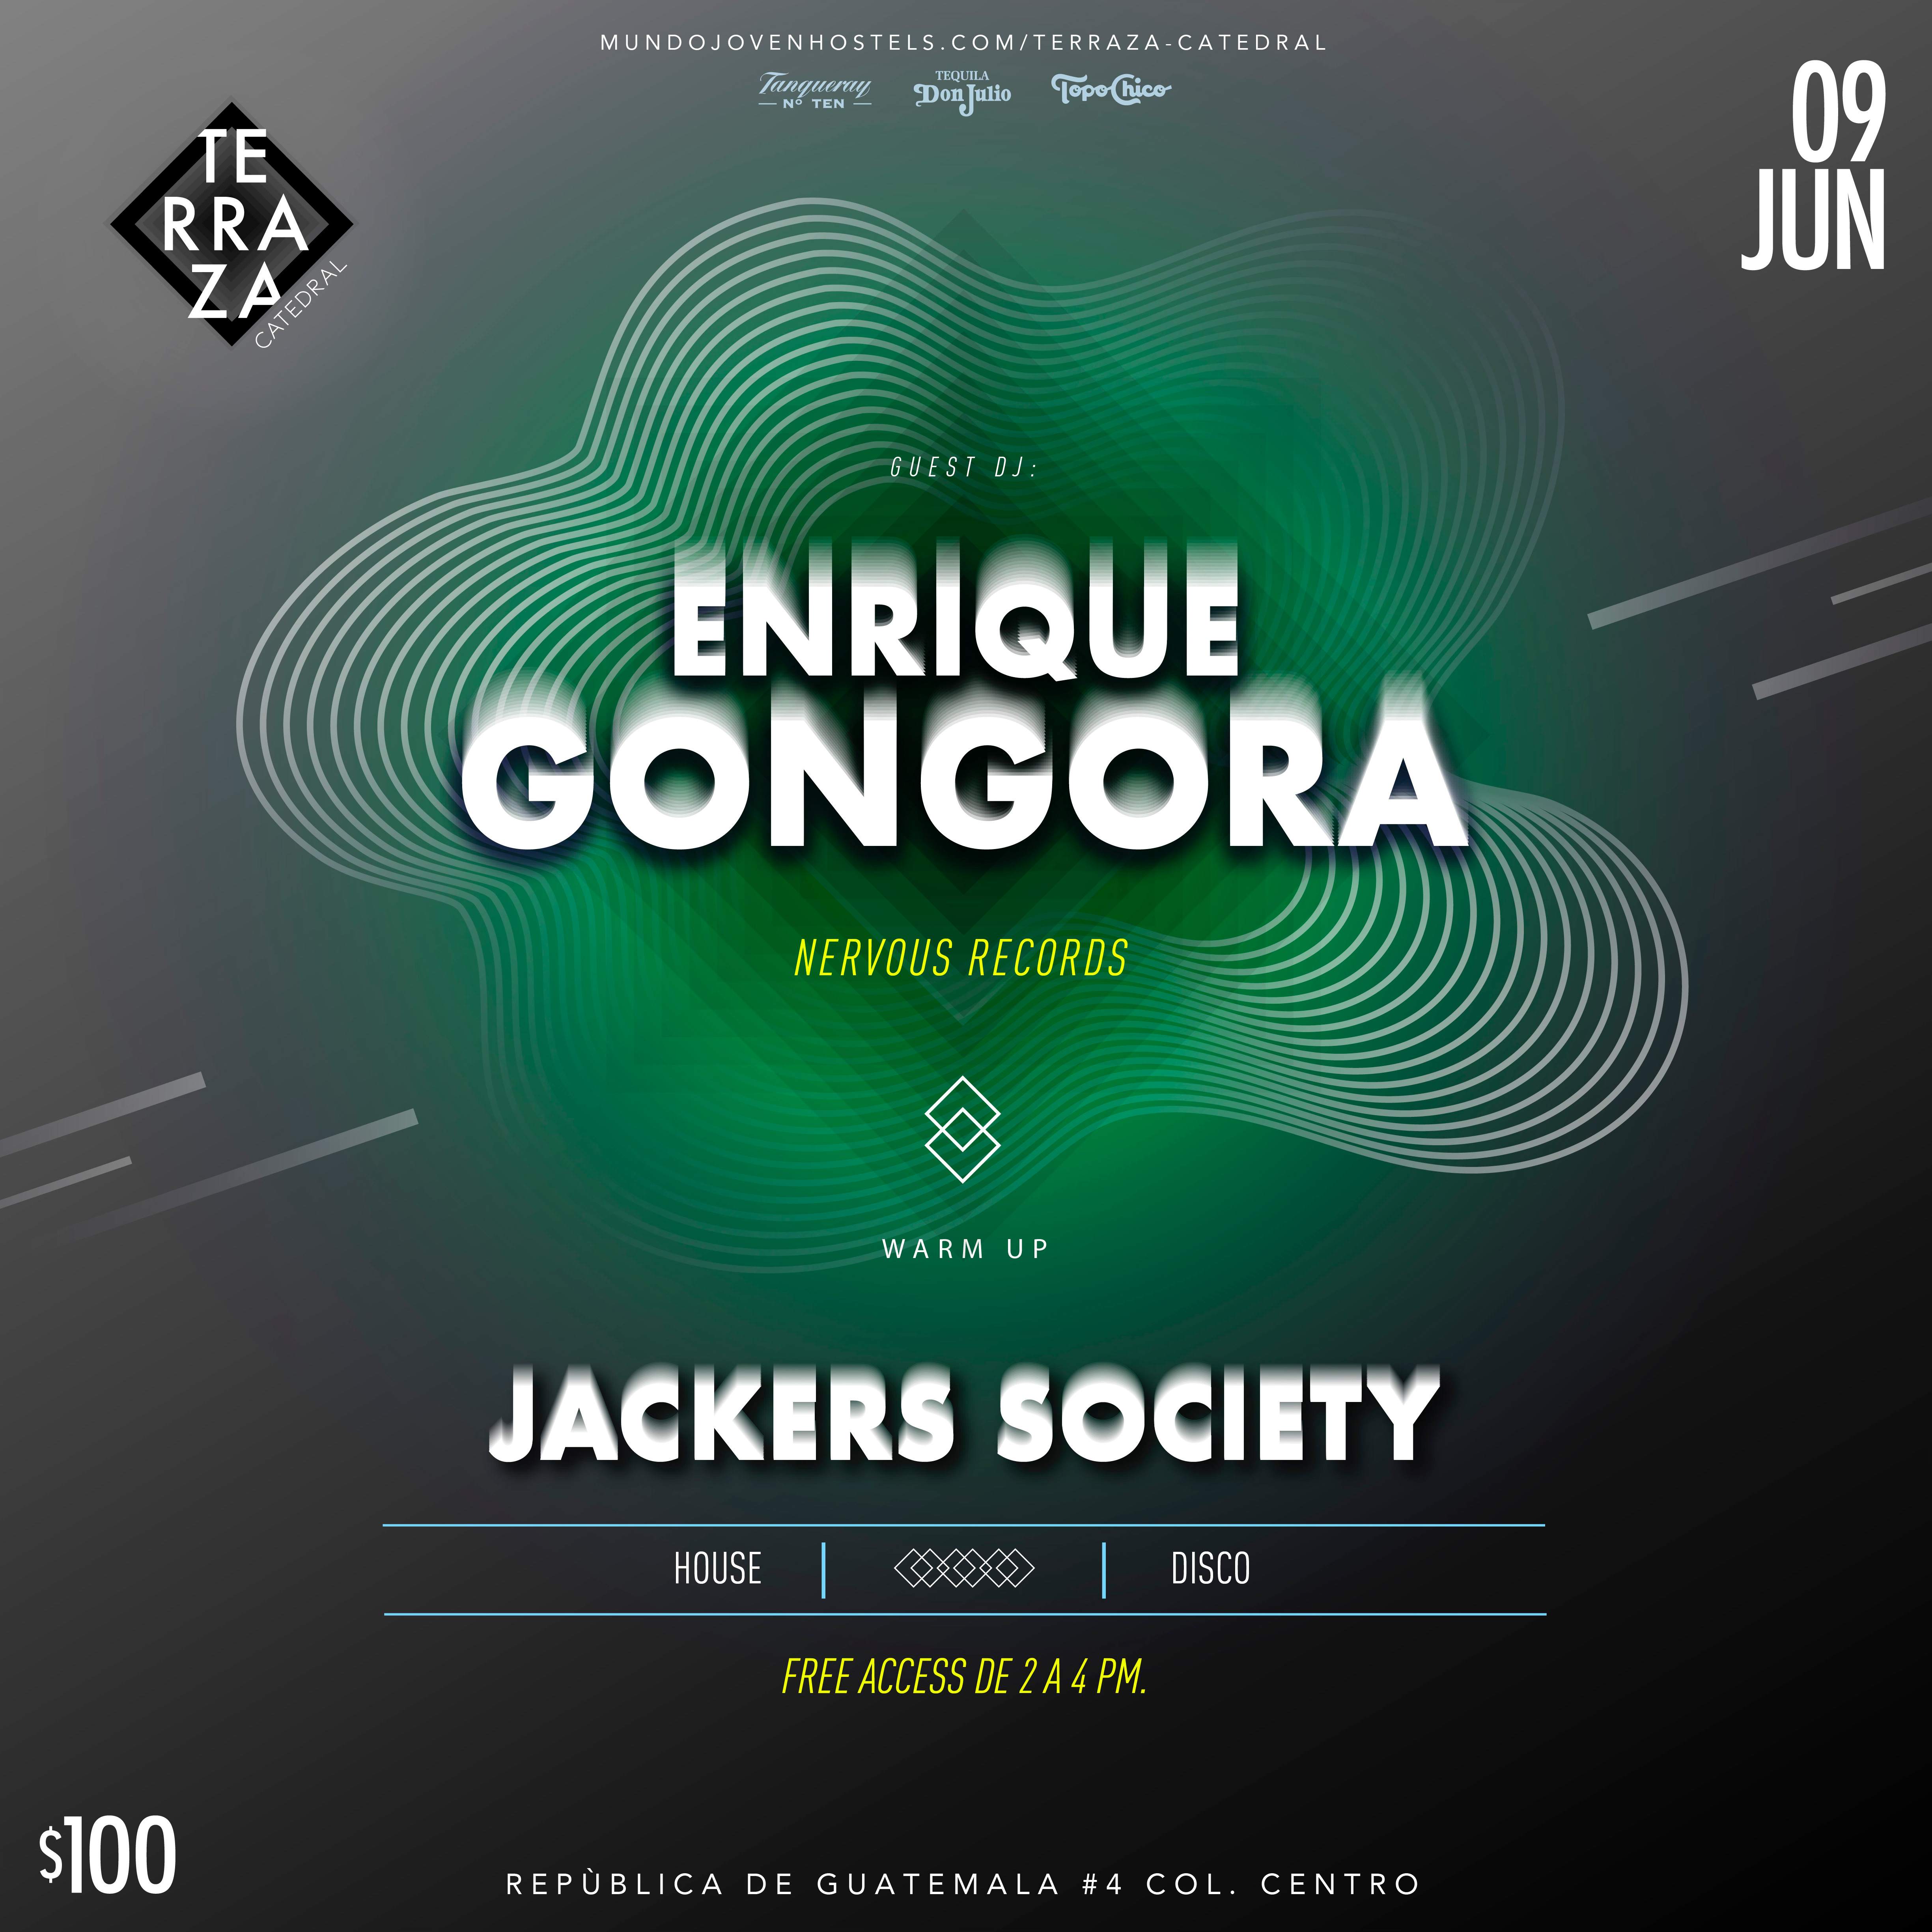 Enrique Góngora + Jackers Society - Página frontal